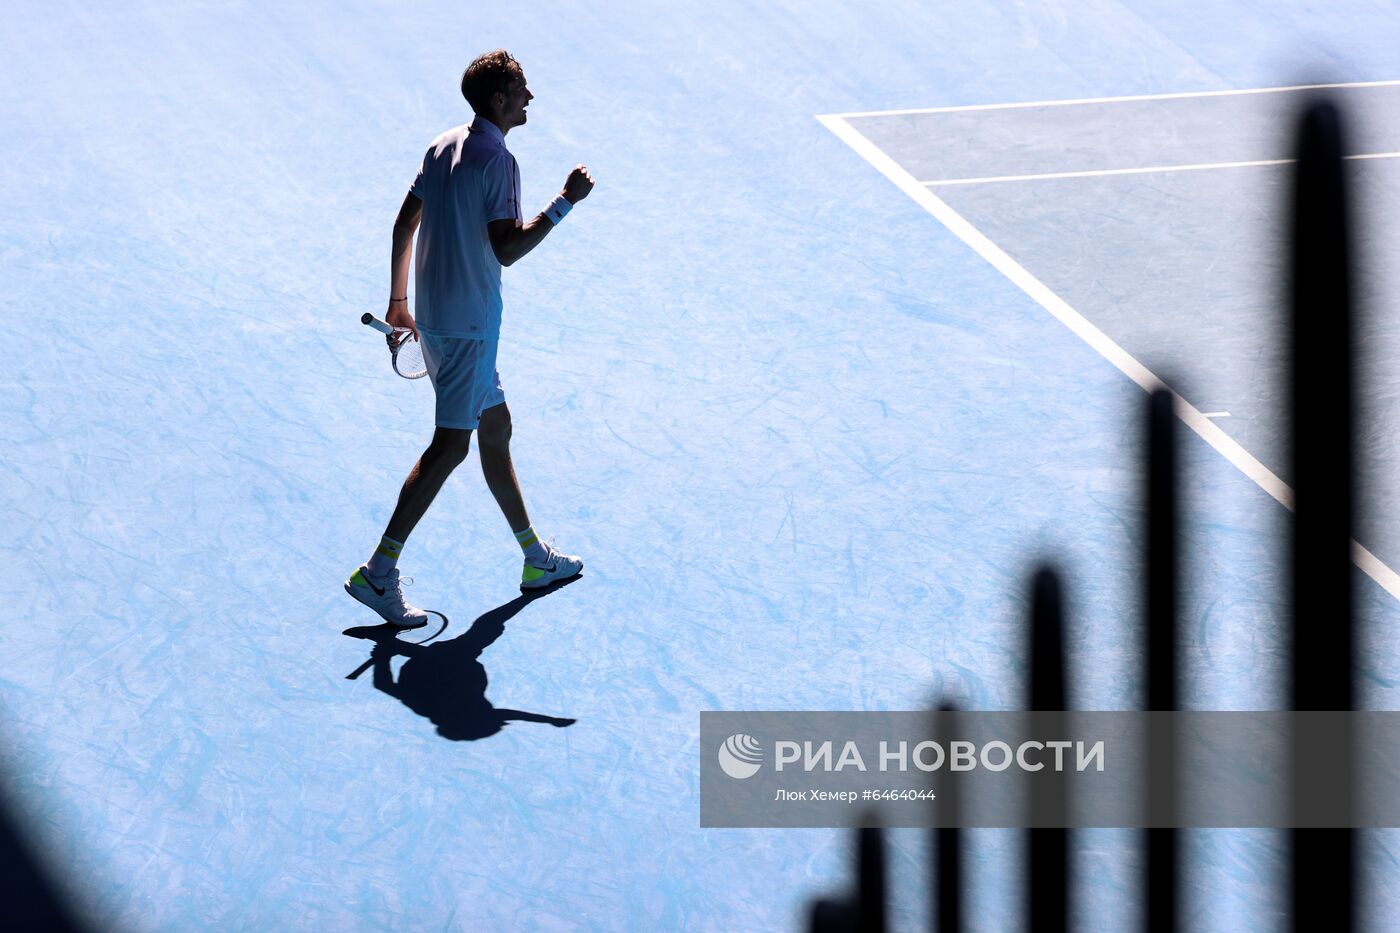 Теннис. Открытый чемпионат Австралии - 2021. Матч А. Рублев - Д. Медведев